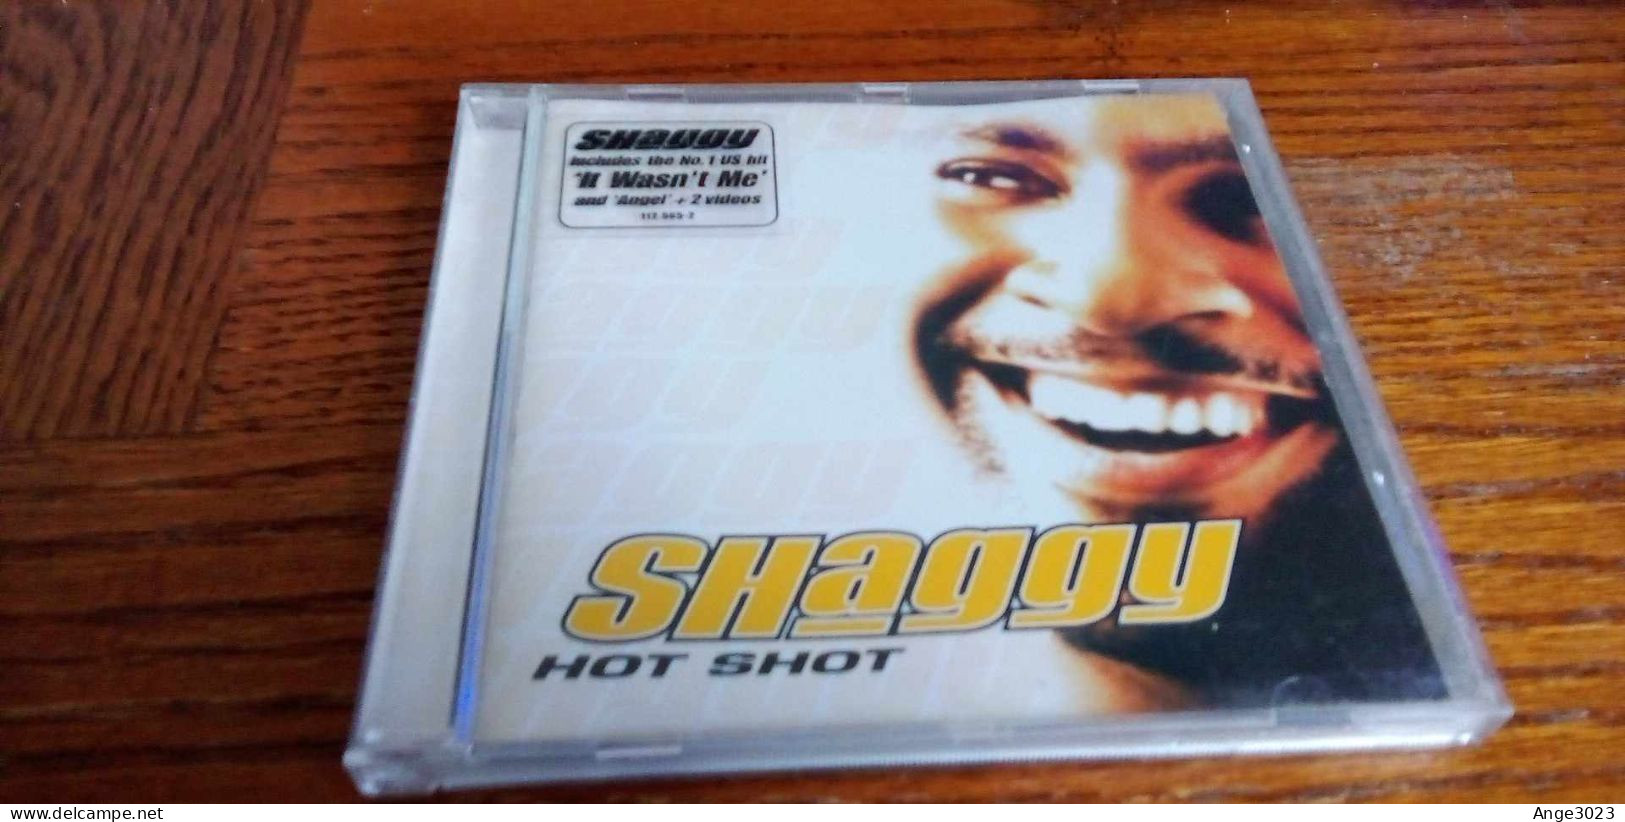 SHAGGY "Hot Shot" - Rap & Hip Hop